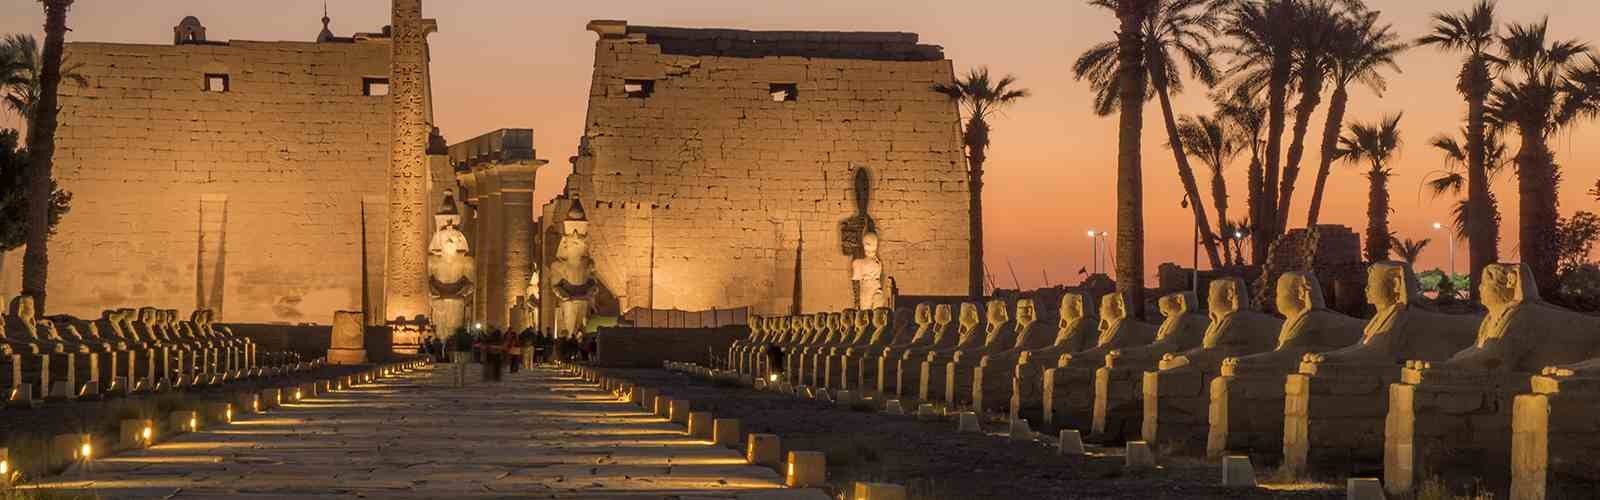 Templo de Luxor na cidade de Luxor